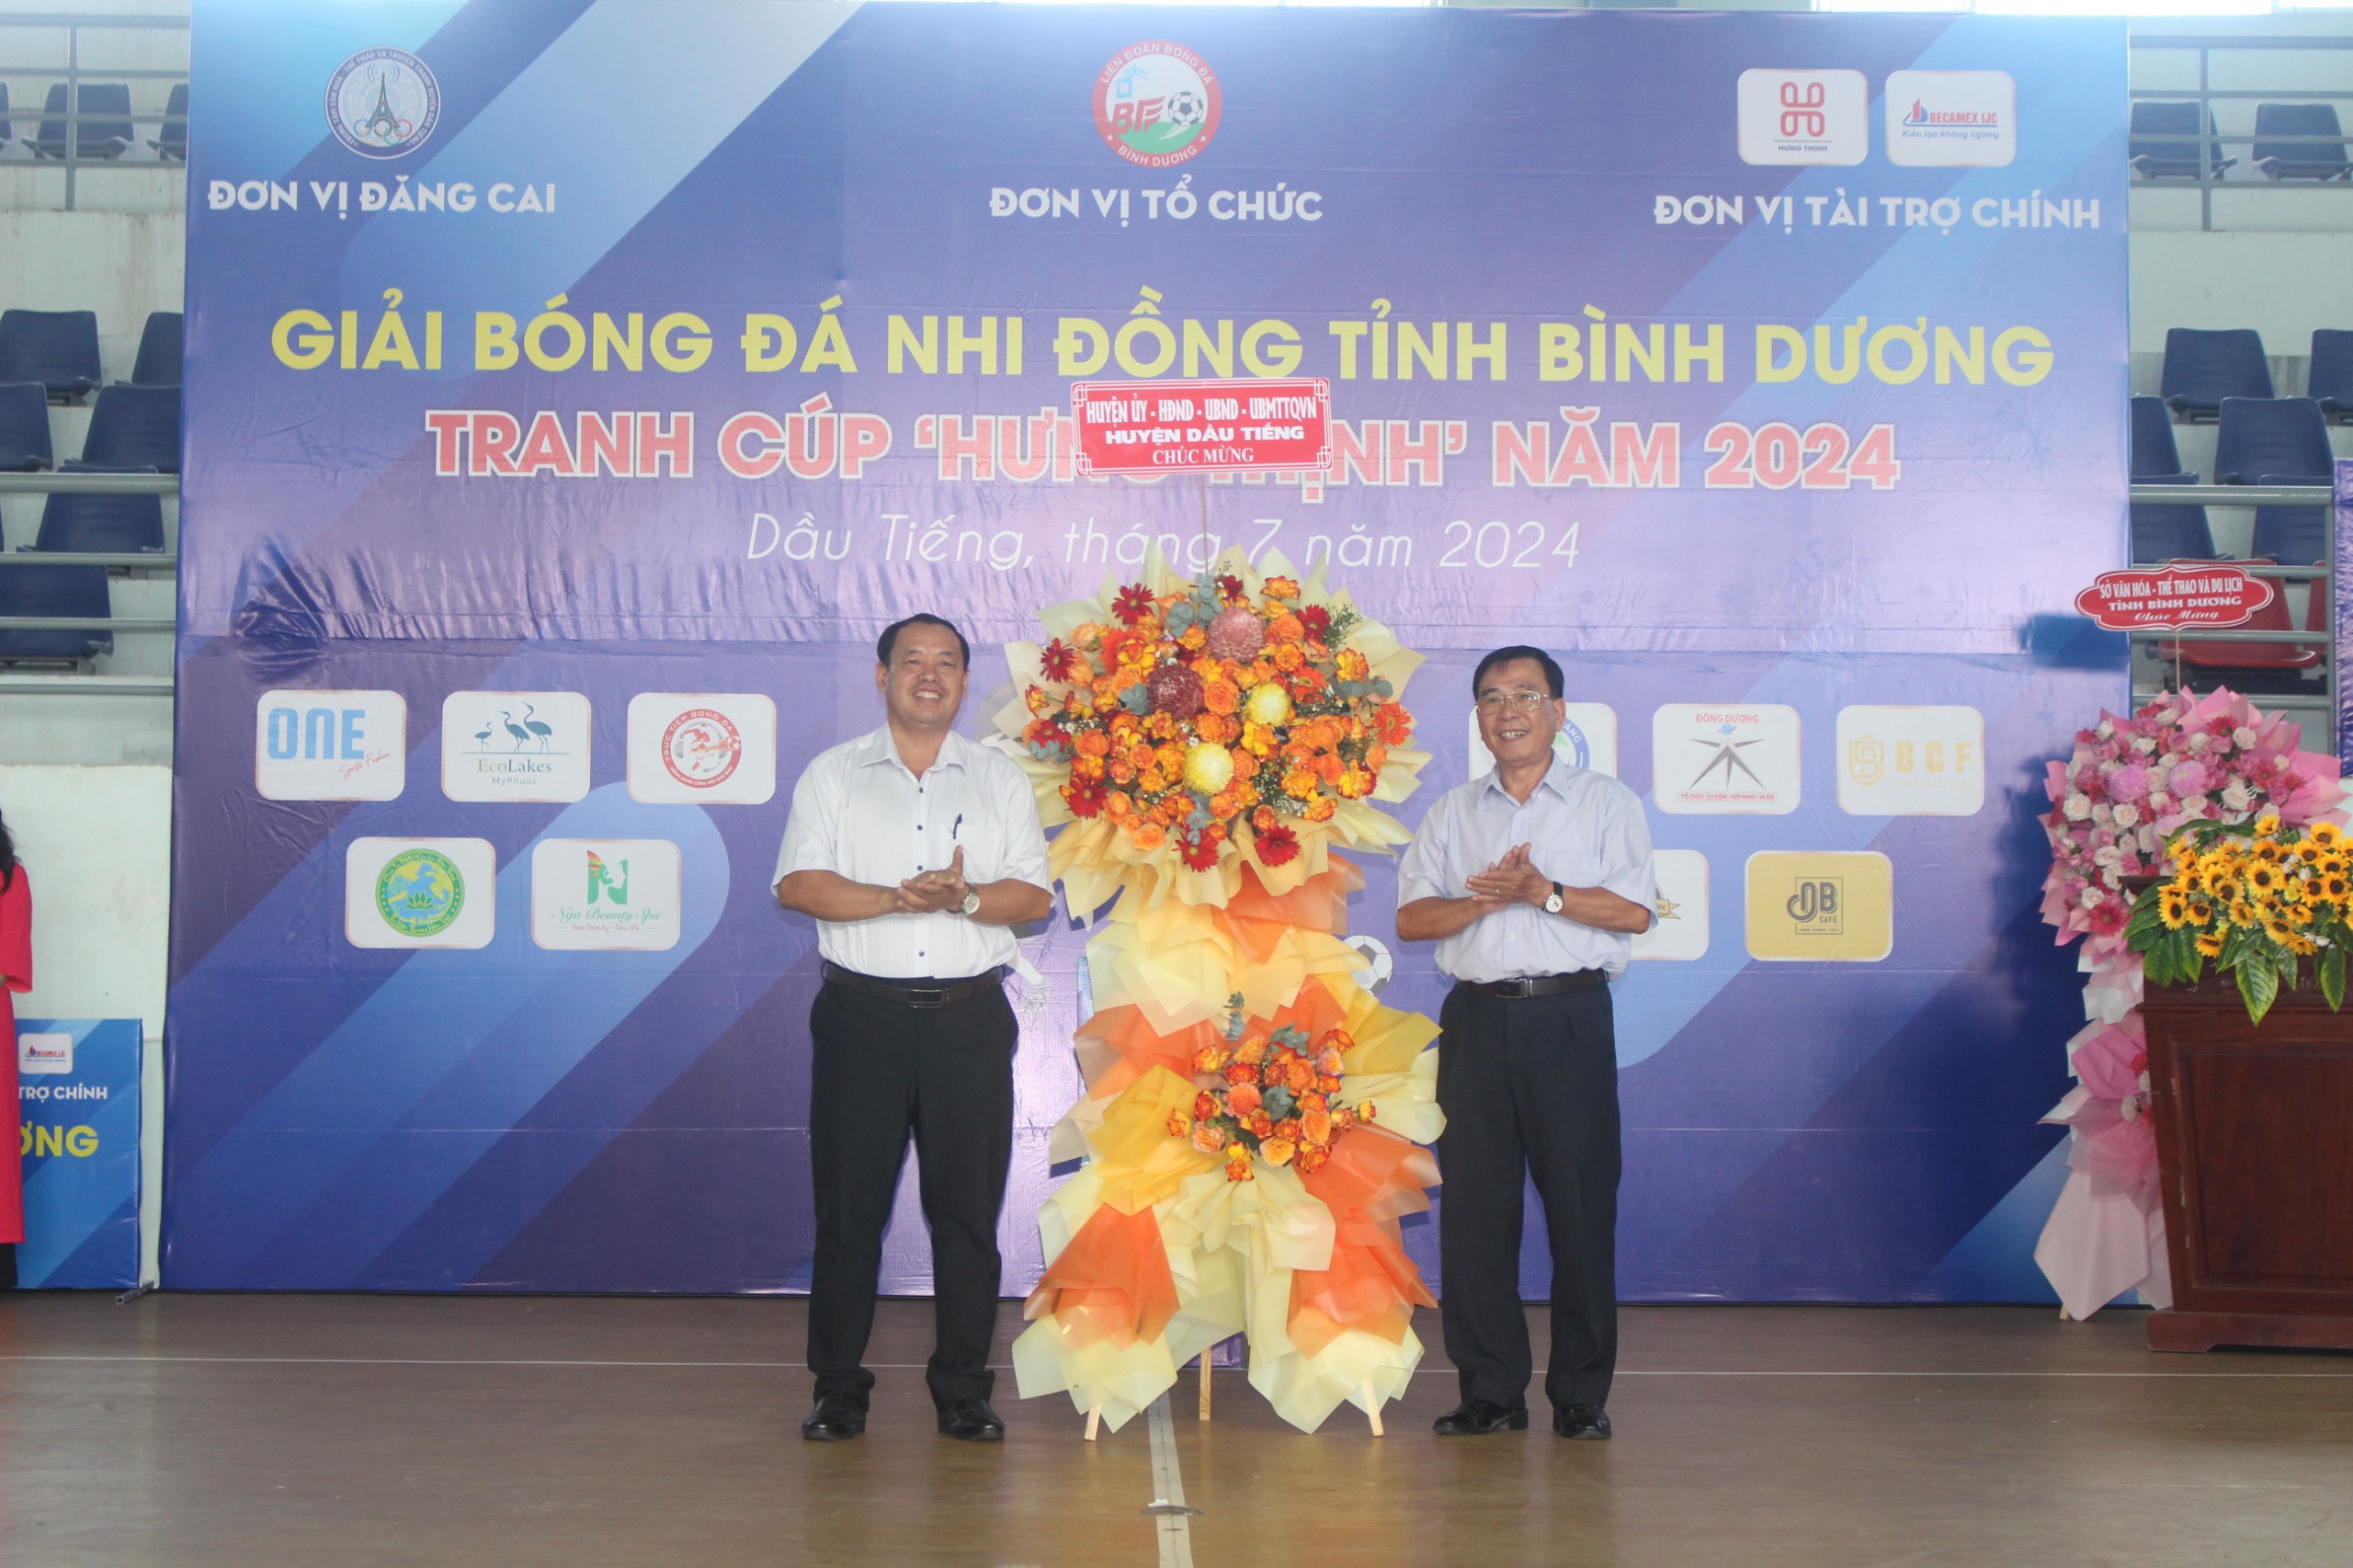 Ông Nguyễn Văn Bình - Chủ tịch UBMTTQ VN huyện Dầu Tiếng trao lẵng hoa của huyện Dầu Tiếng chúc mừng BTC giải